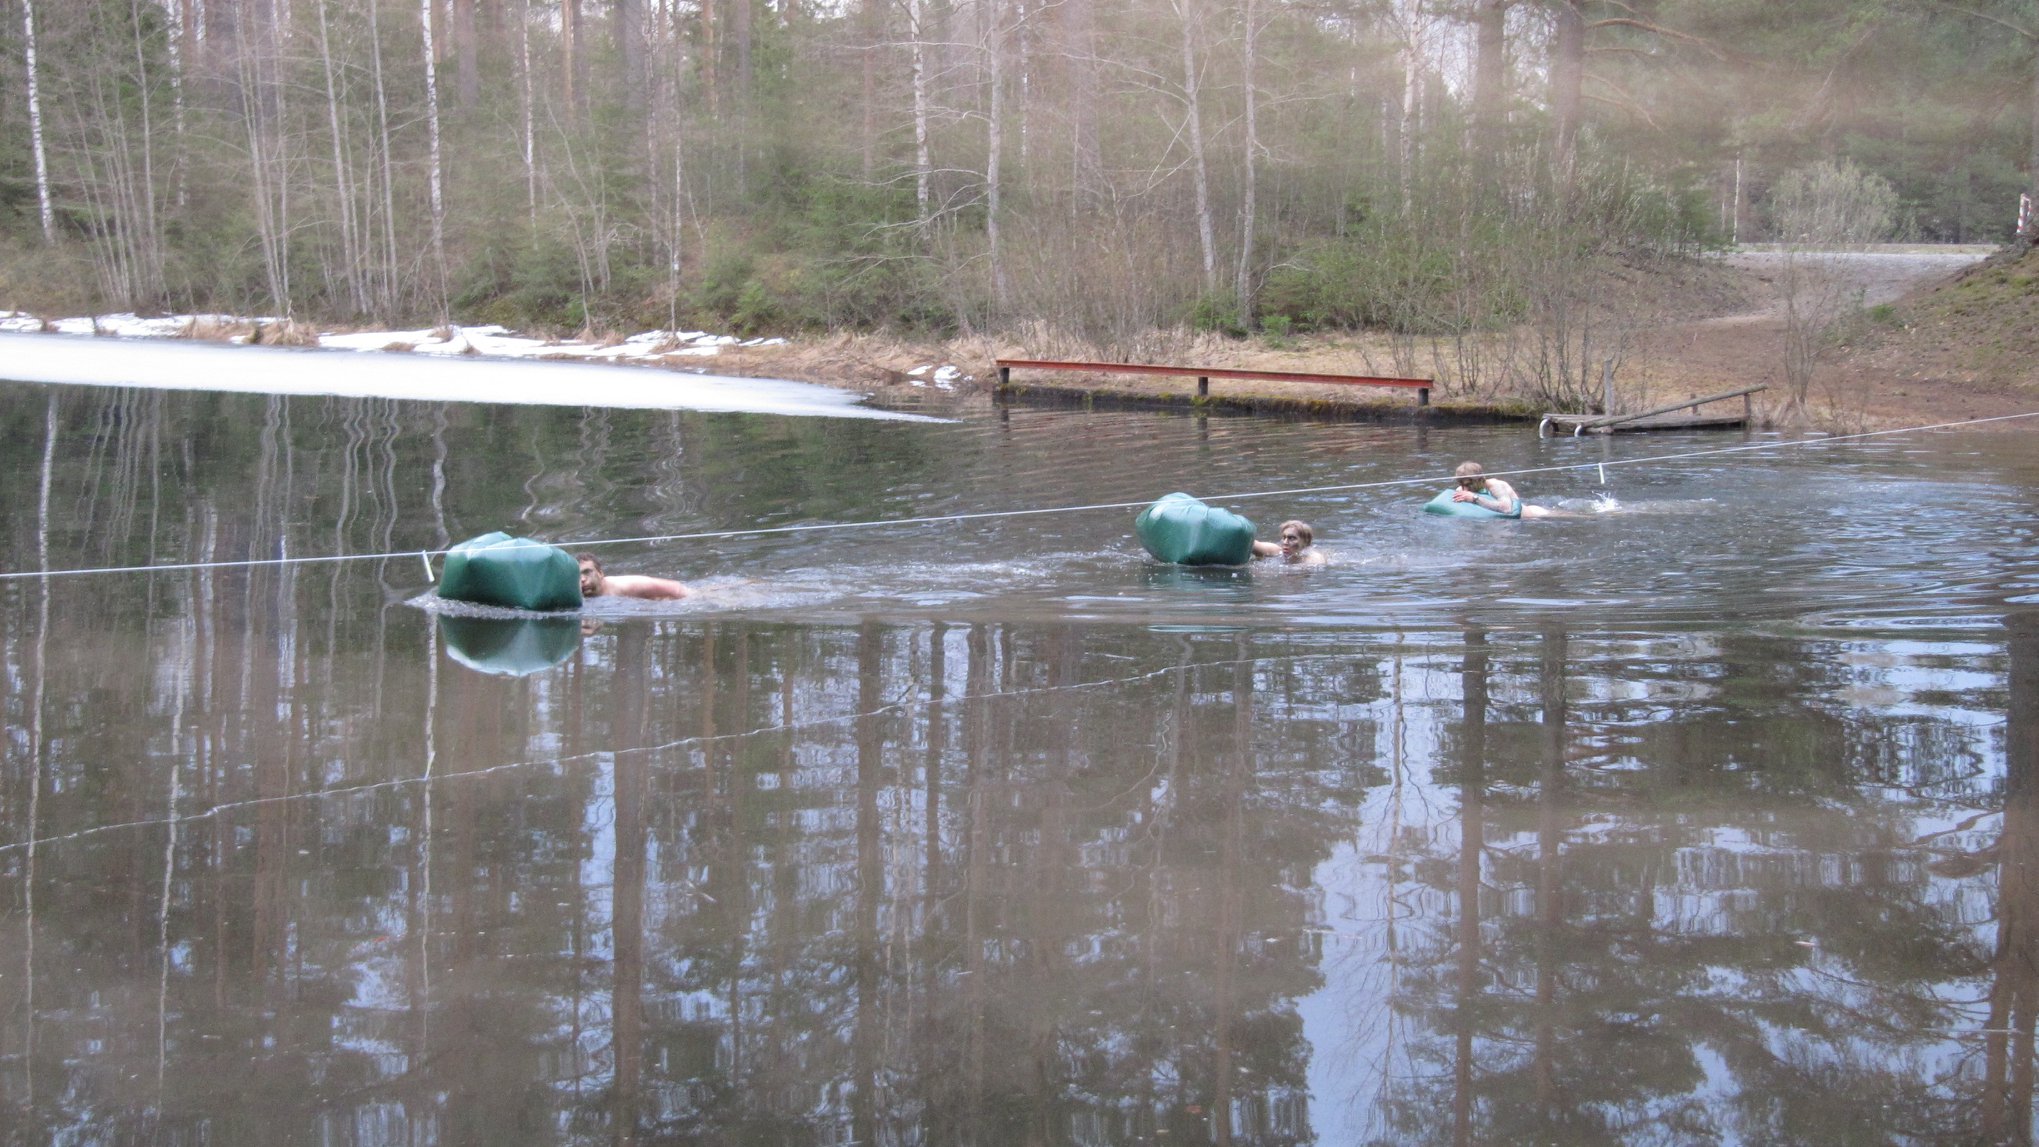 Kolme miestä ylittää vettä uiden mukanaan vihreät kelluvat säkit. Vesistö on rannasta jäässä.